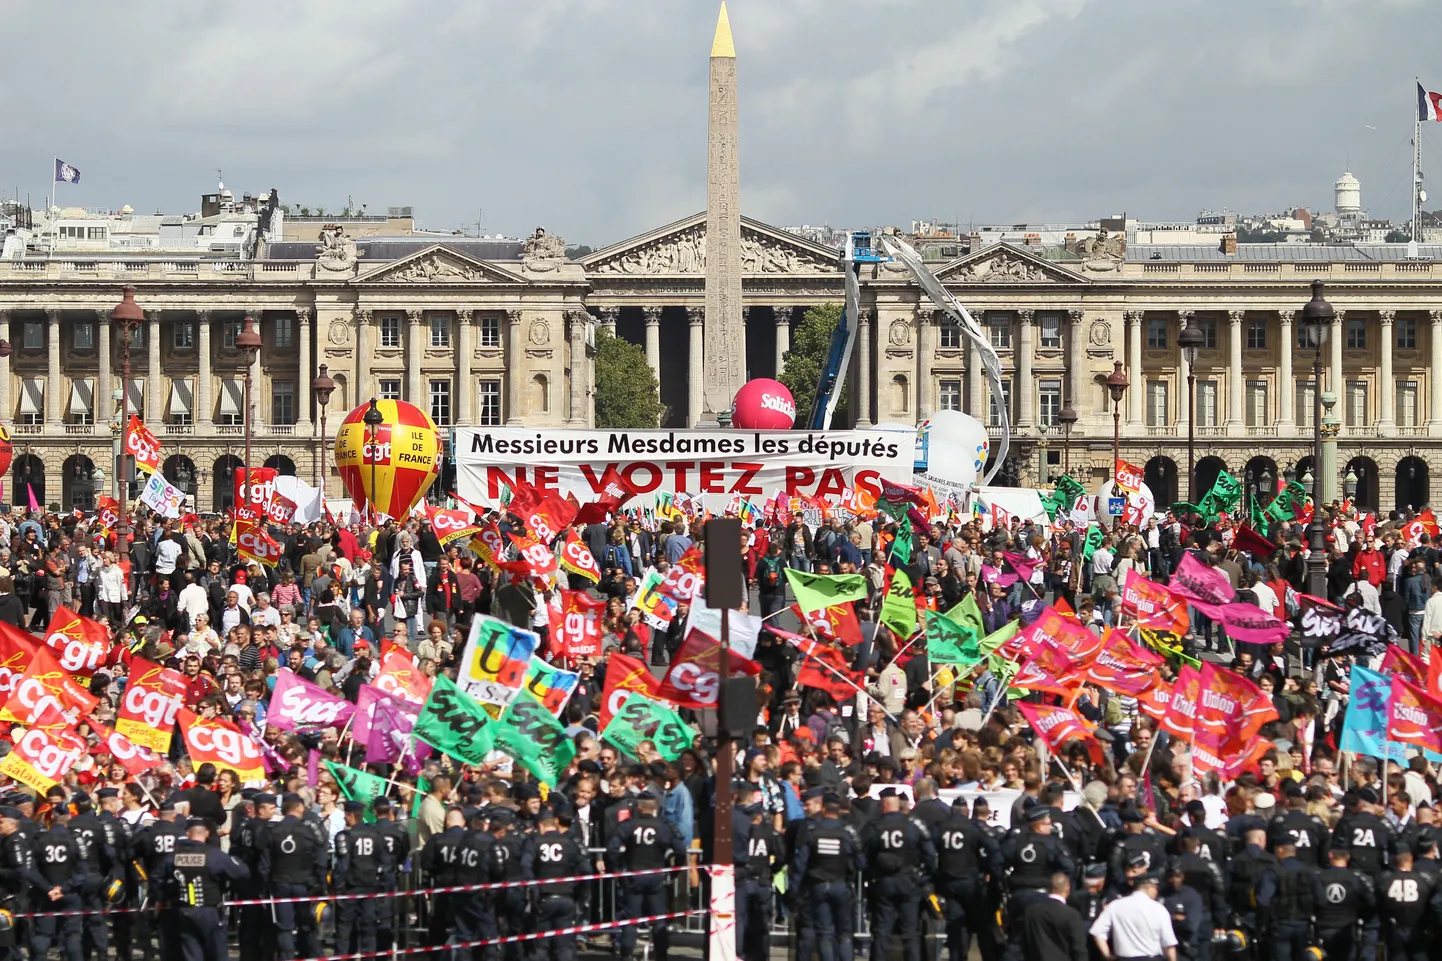 Pariisis asuva rahvusassamblee hoone ees avaldati pensionireformi vastu meelt.